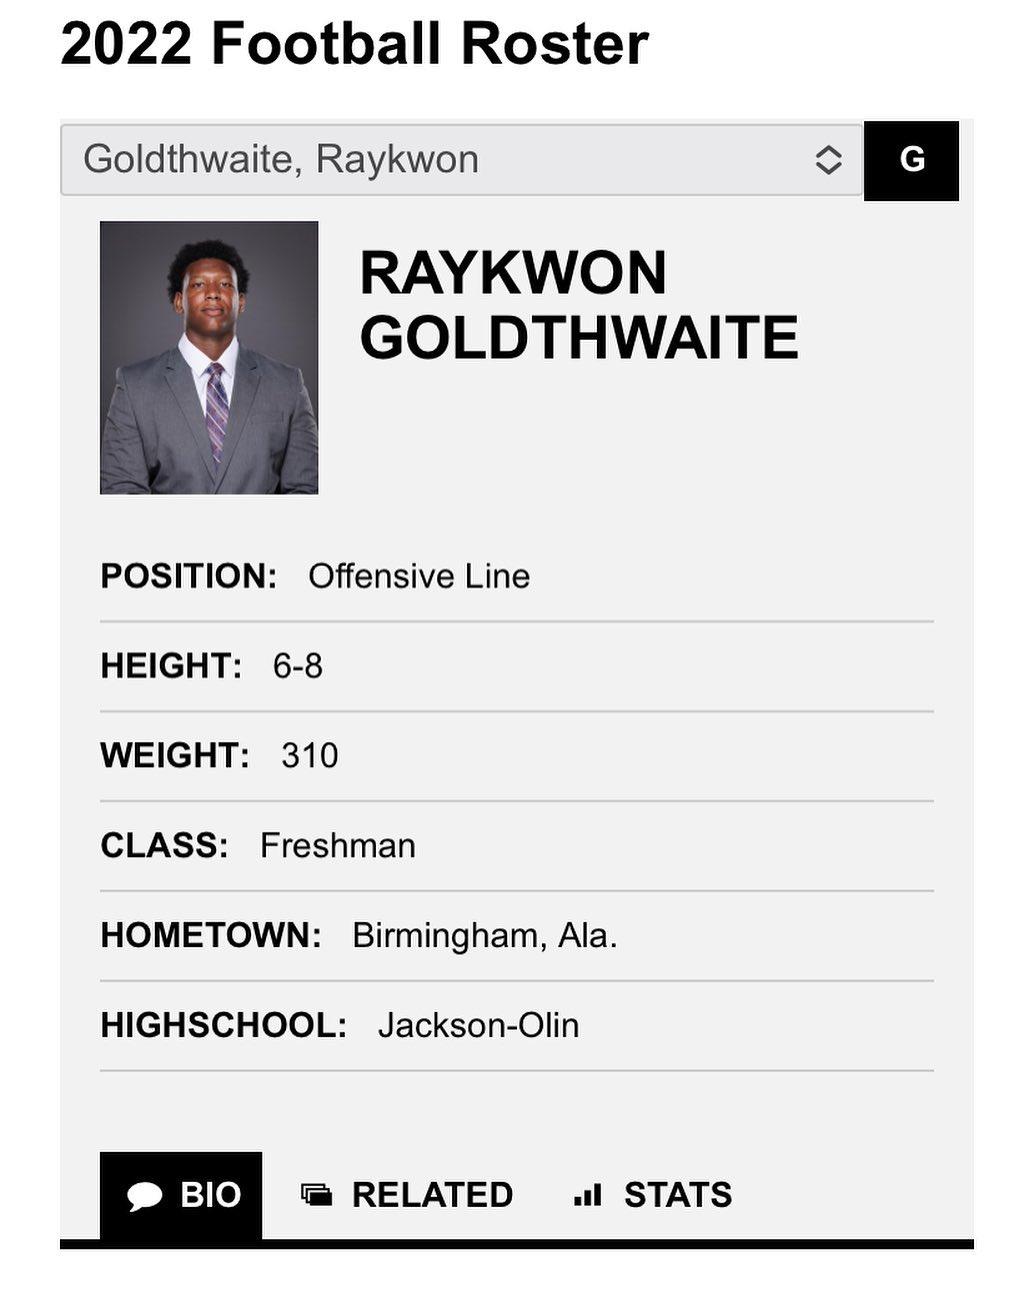 Raykwon Goldthwaite Instagram Post Influencer Campaign